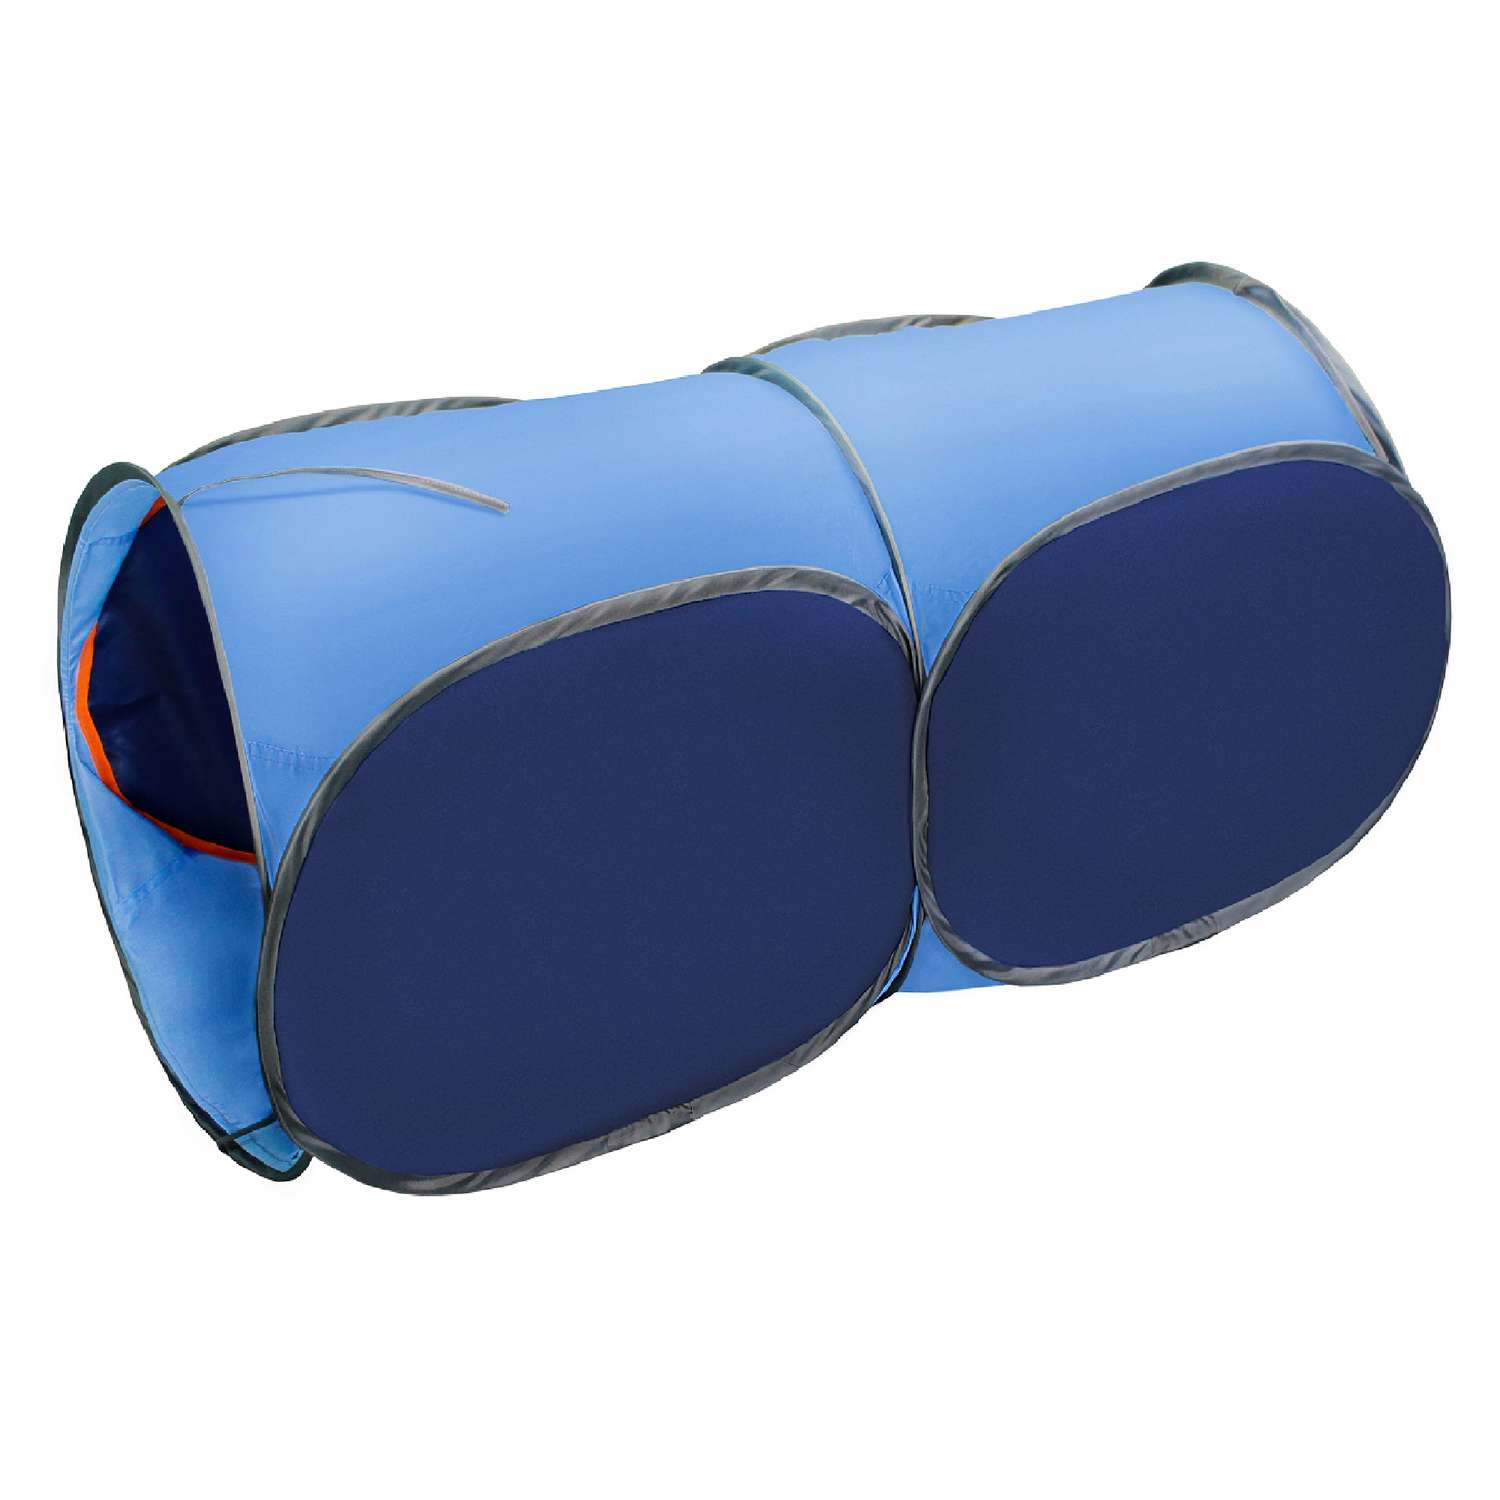 Тоннель для палатки Belon familia двухсекционный цвет синий и голубой - фото 1